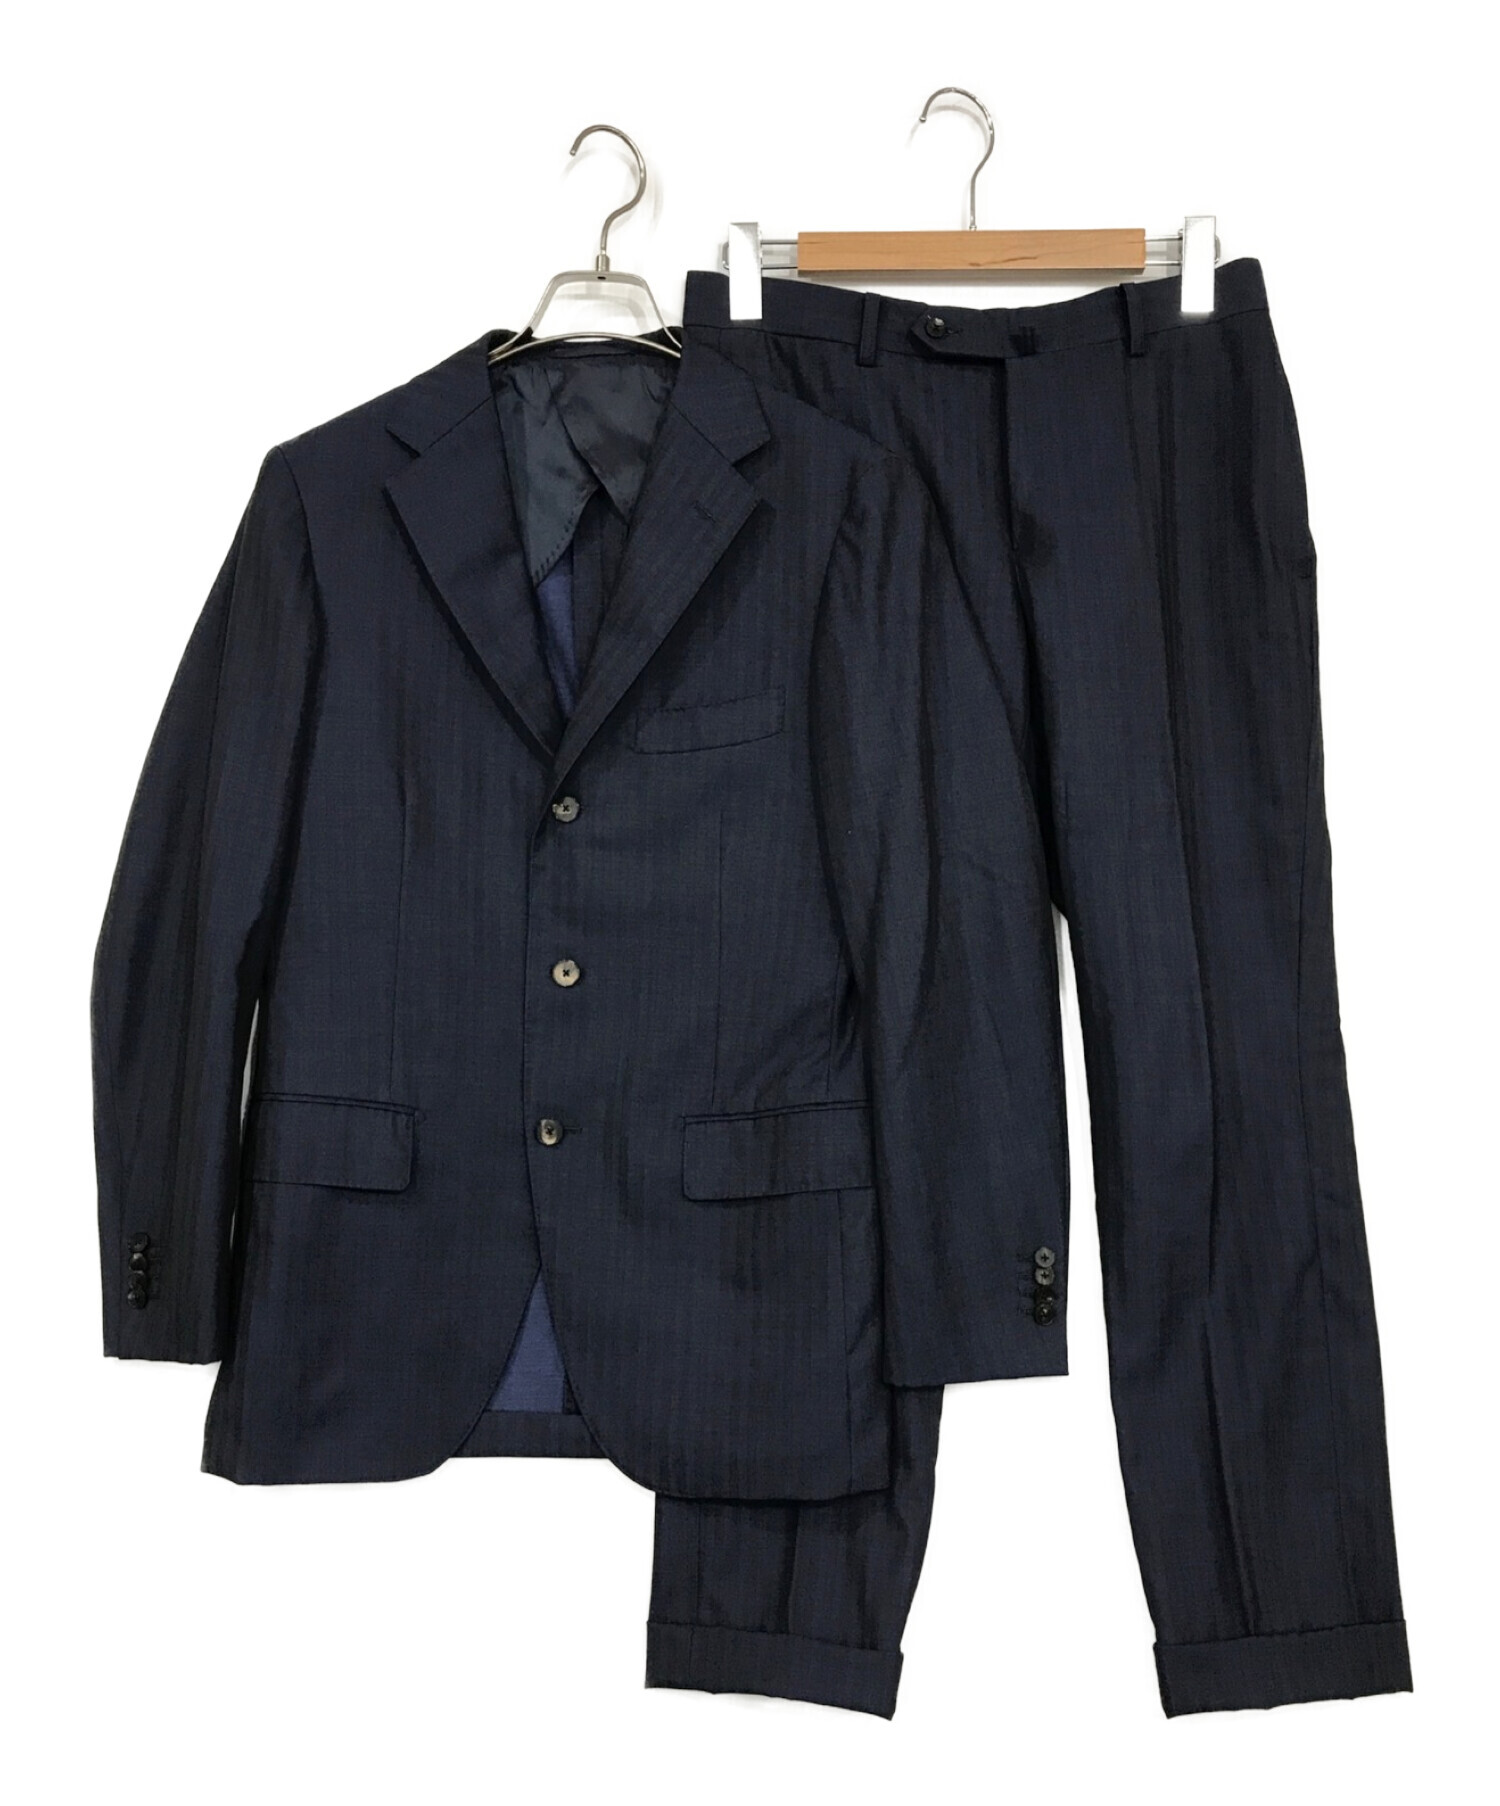 SUIT COMPANY スーツ セットアップ Mサイズ ネイビー - スーツ